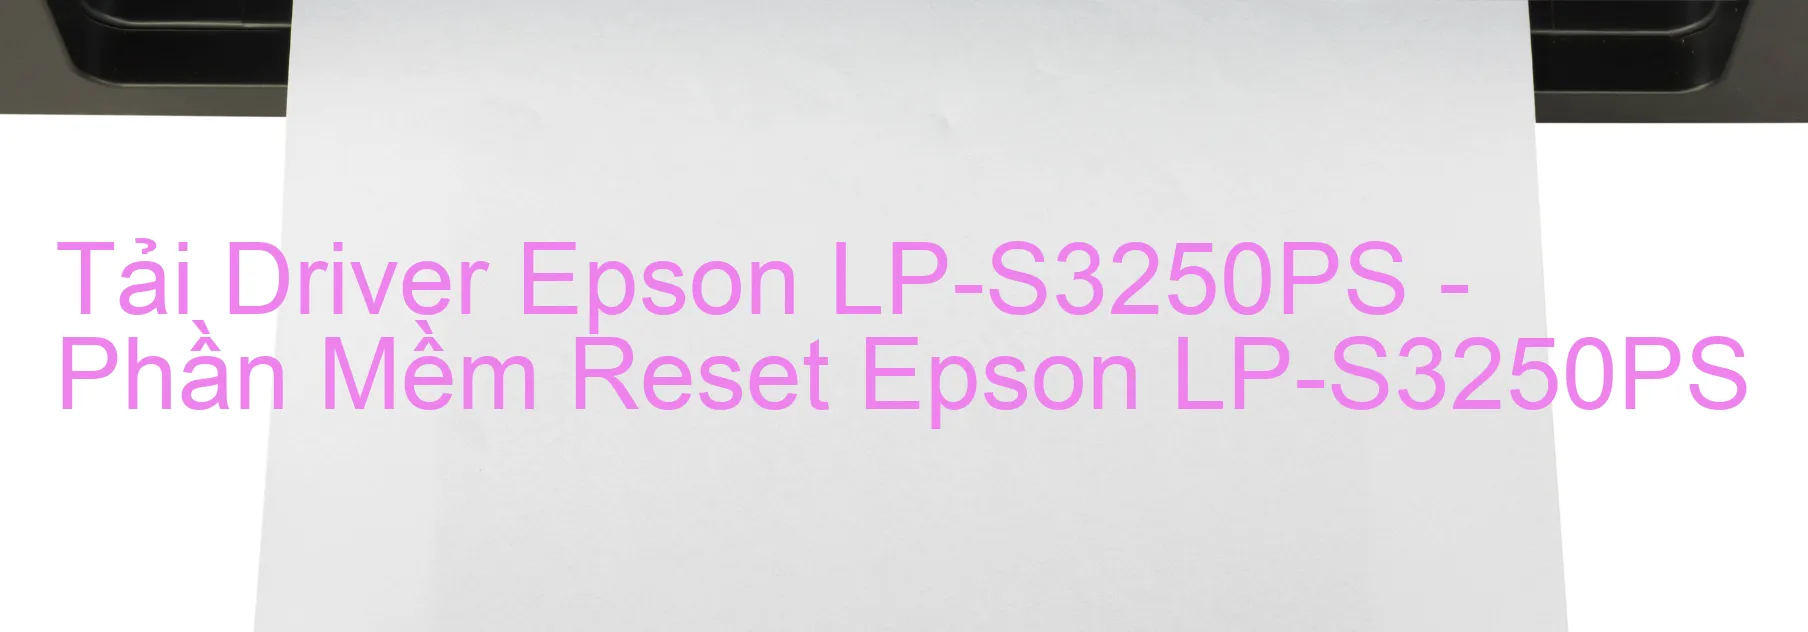 Driver Epson LP-S3250PS, Phần Mềm Reset Epson LP-S3250PS